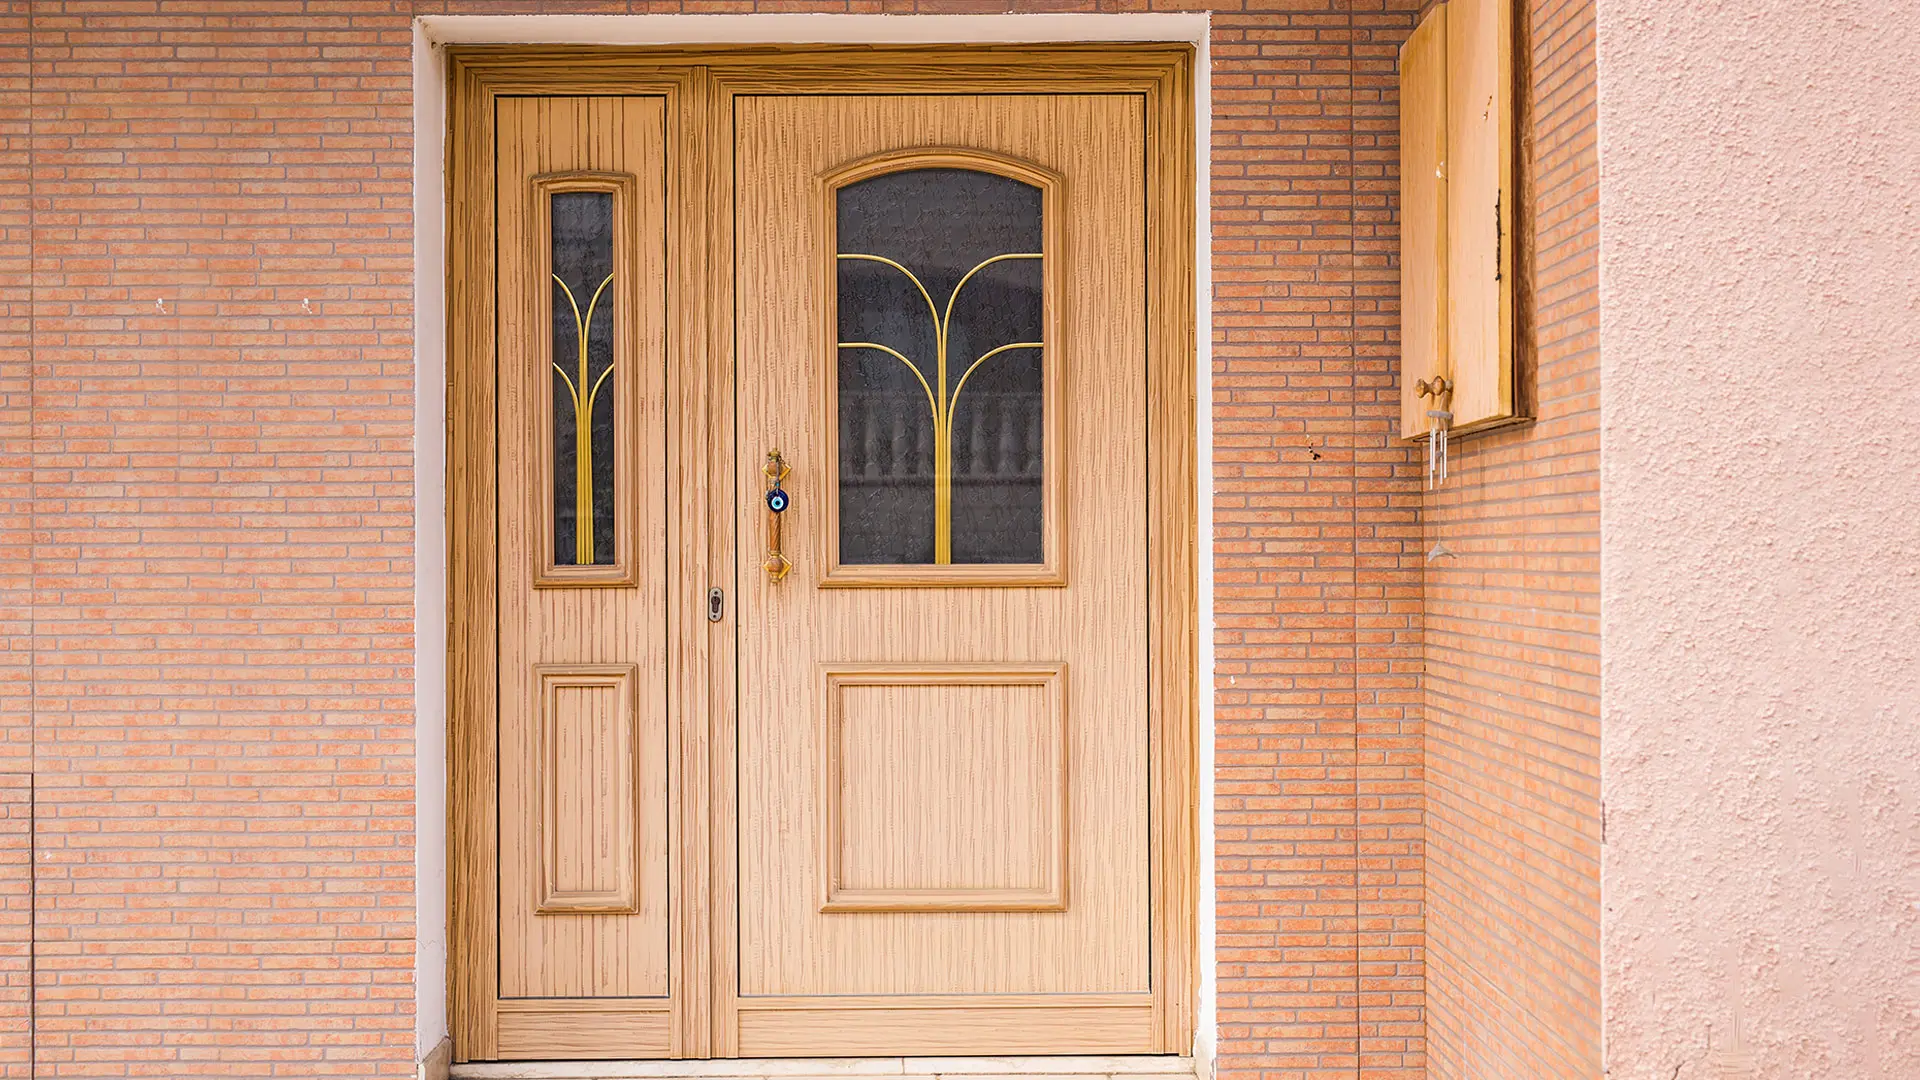 Haustüren – Worauf sollte man bei der Auswahl und der Montage achten?